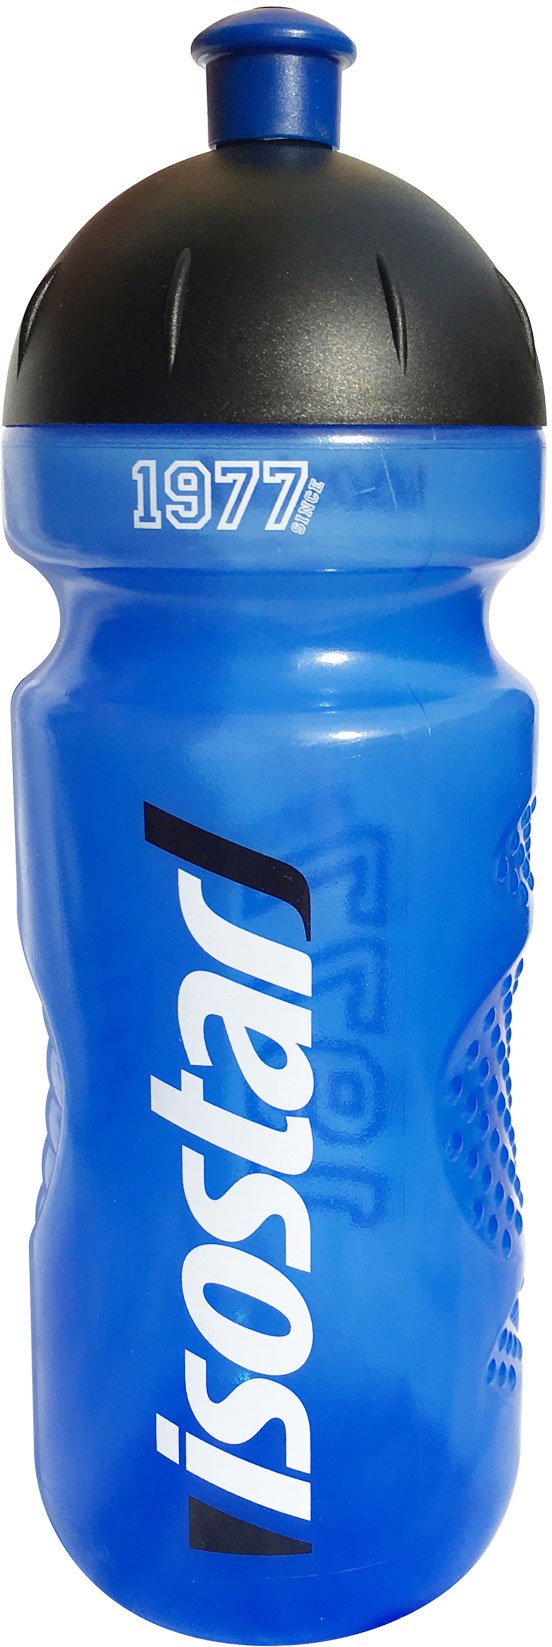 Botella ISOSTAR 650ml BIDON